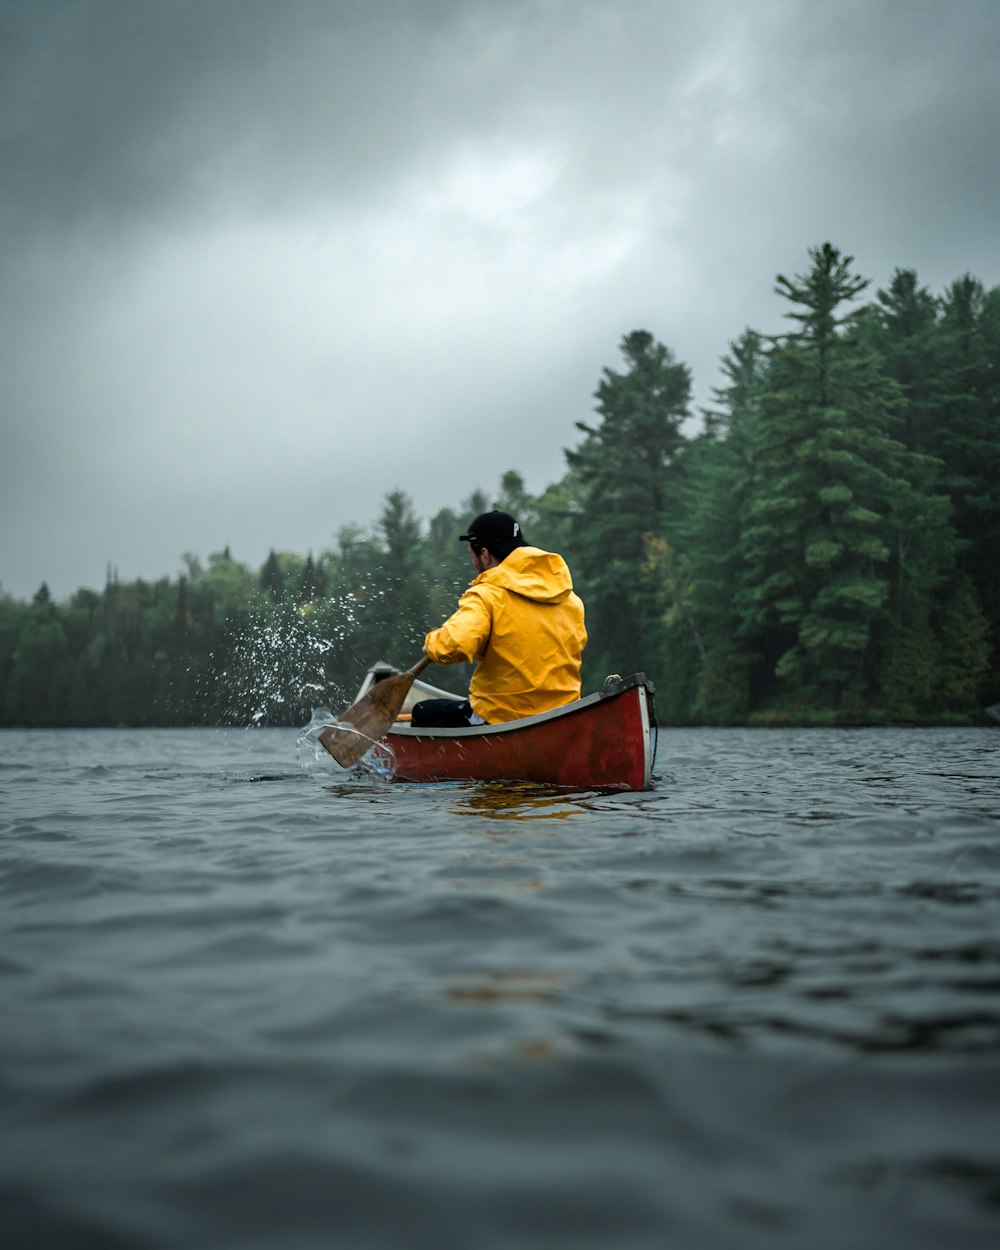 man wearing orange hoodie riding red canoe on lake